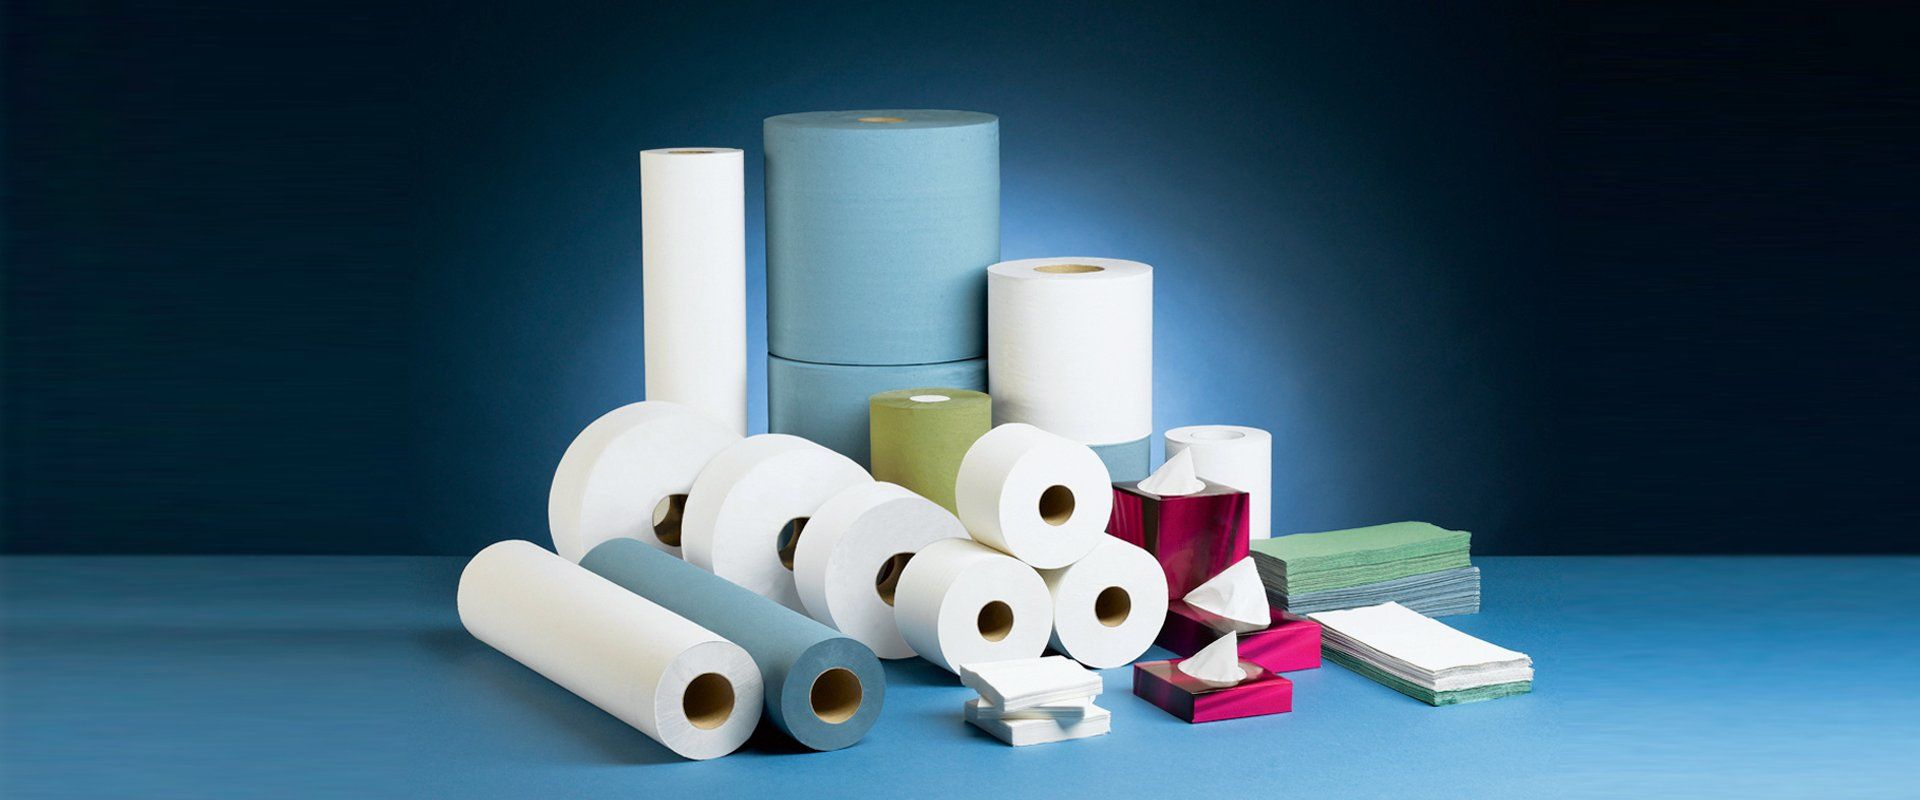 Tissue paper supplies